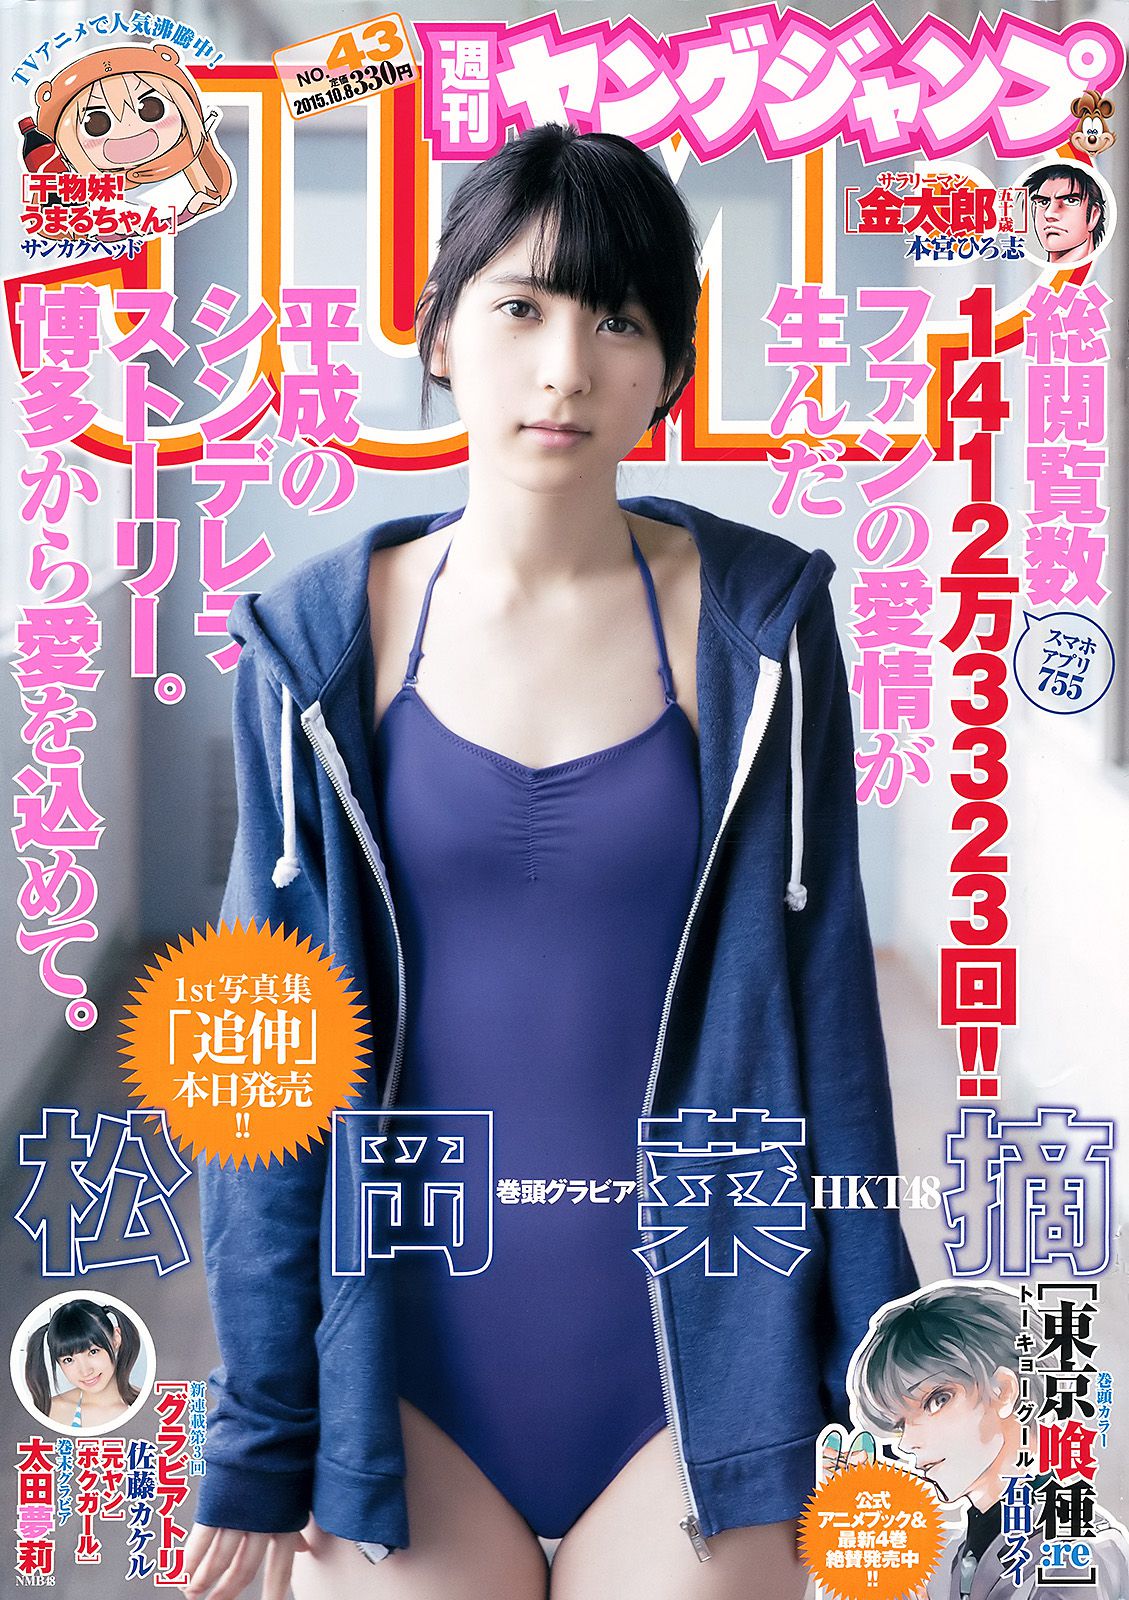 松岡菜摘 太田夢莉 [Weekly Young Jump] 2015年No.43 写真杂志玩白嫩少妇小泬高潮18P